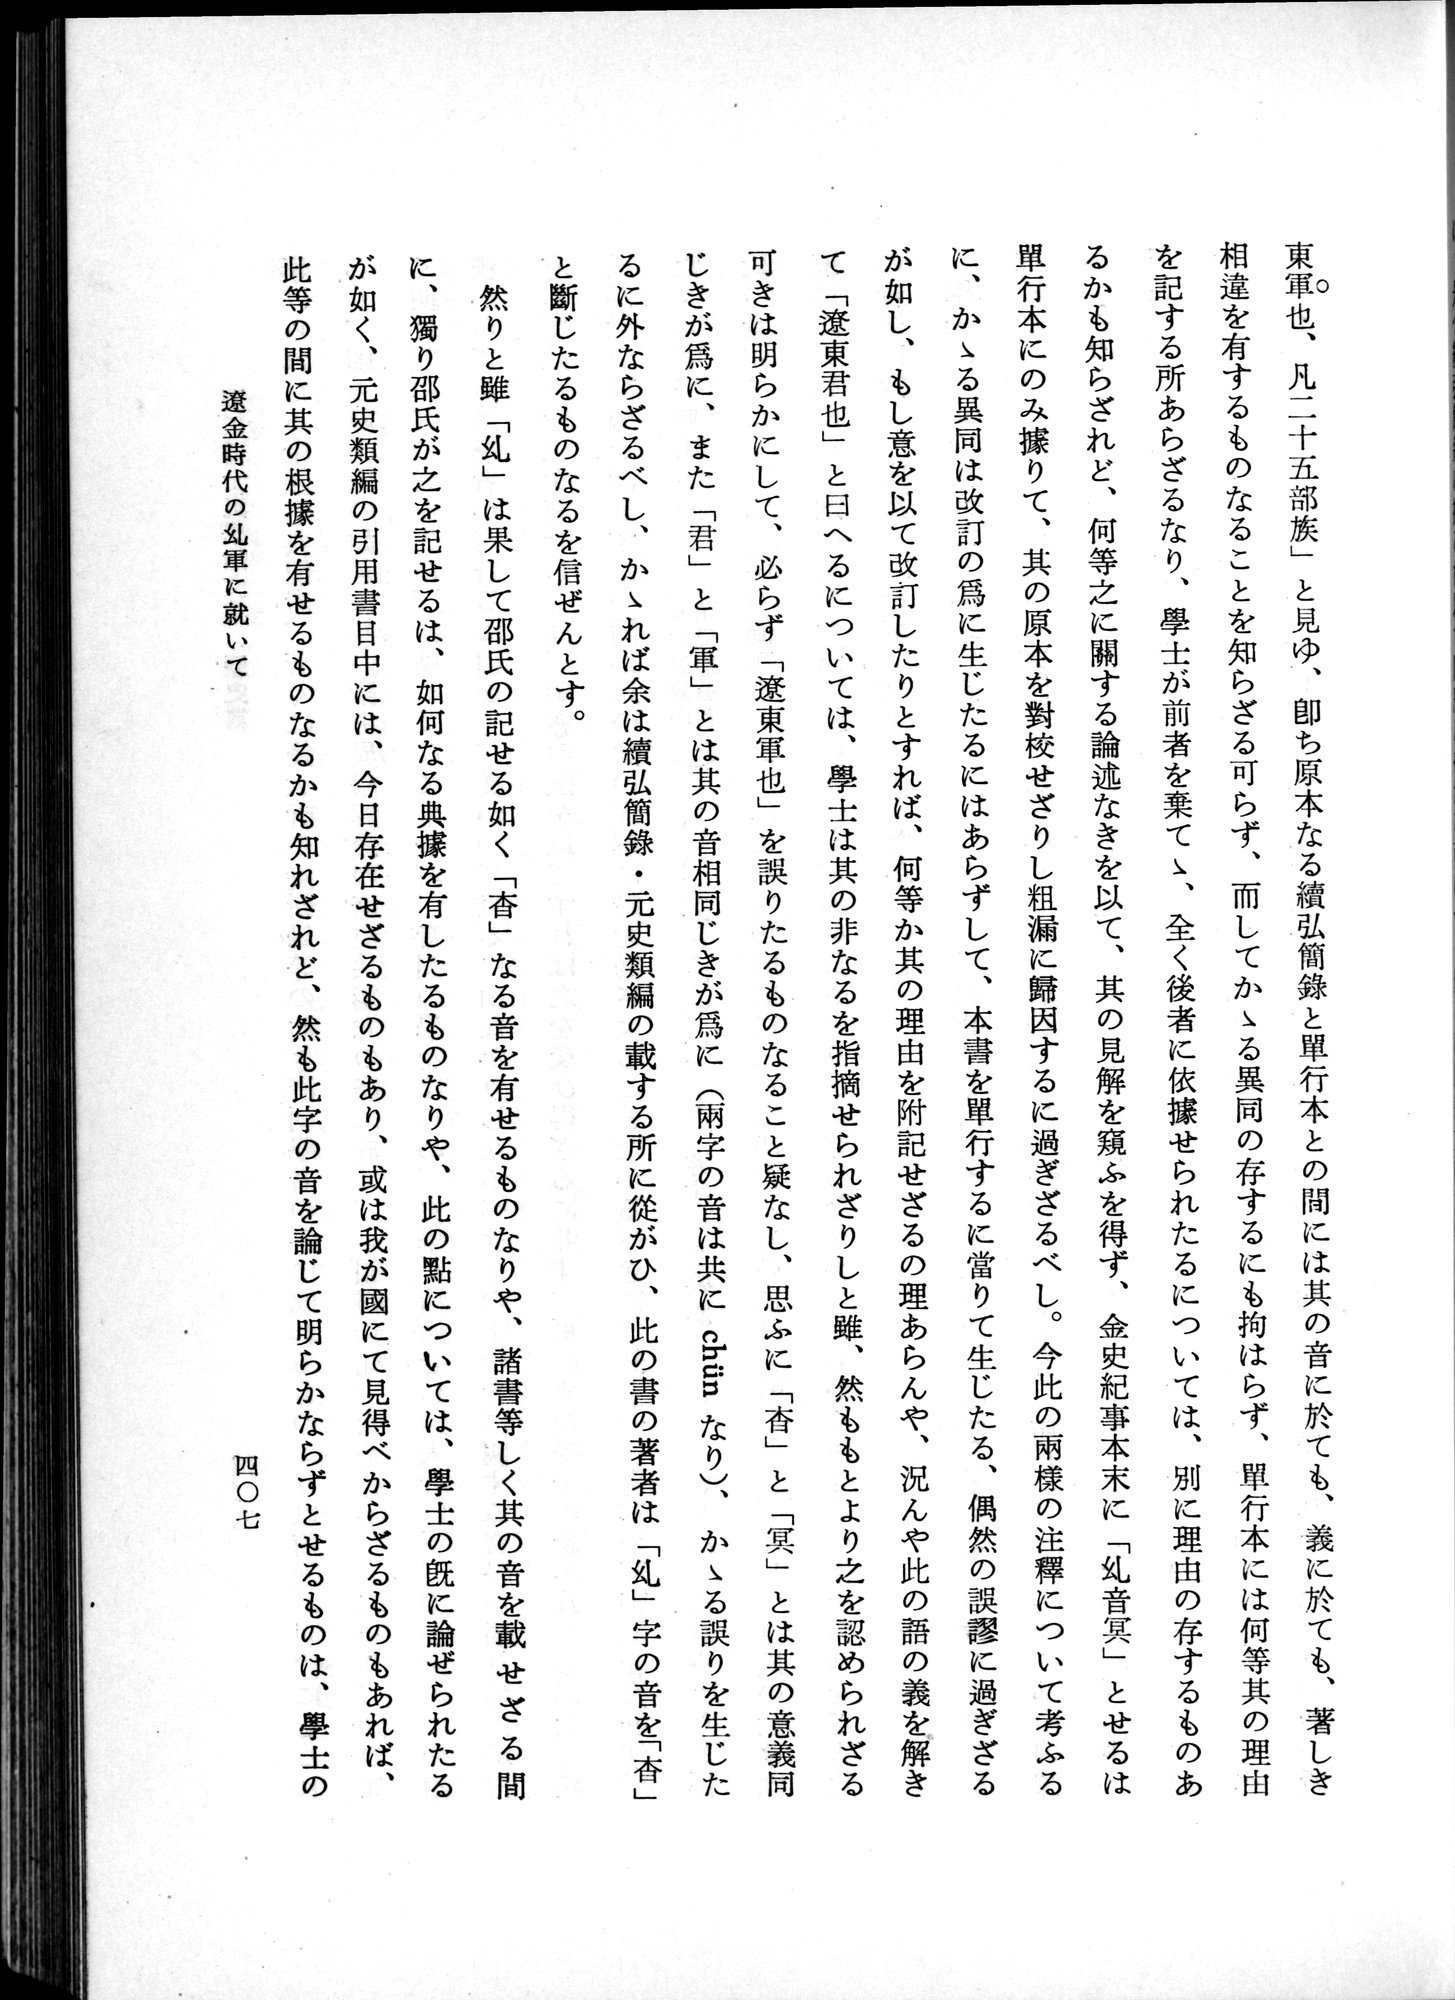 羽田博士史学論文集 : vol.1 / Page 445 (Grayscale High Resolution Image)